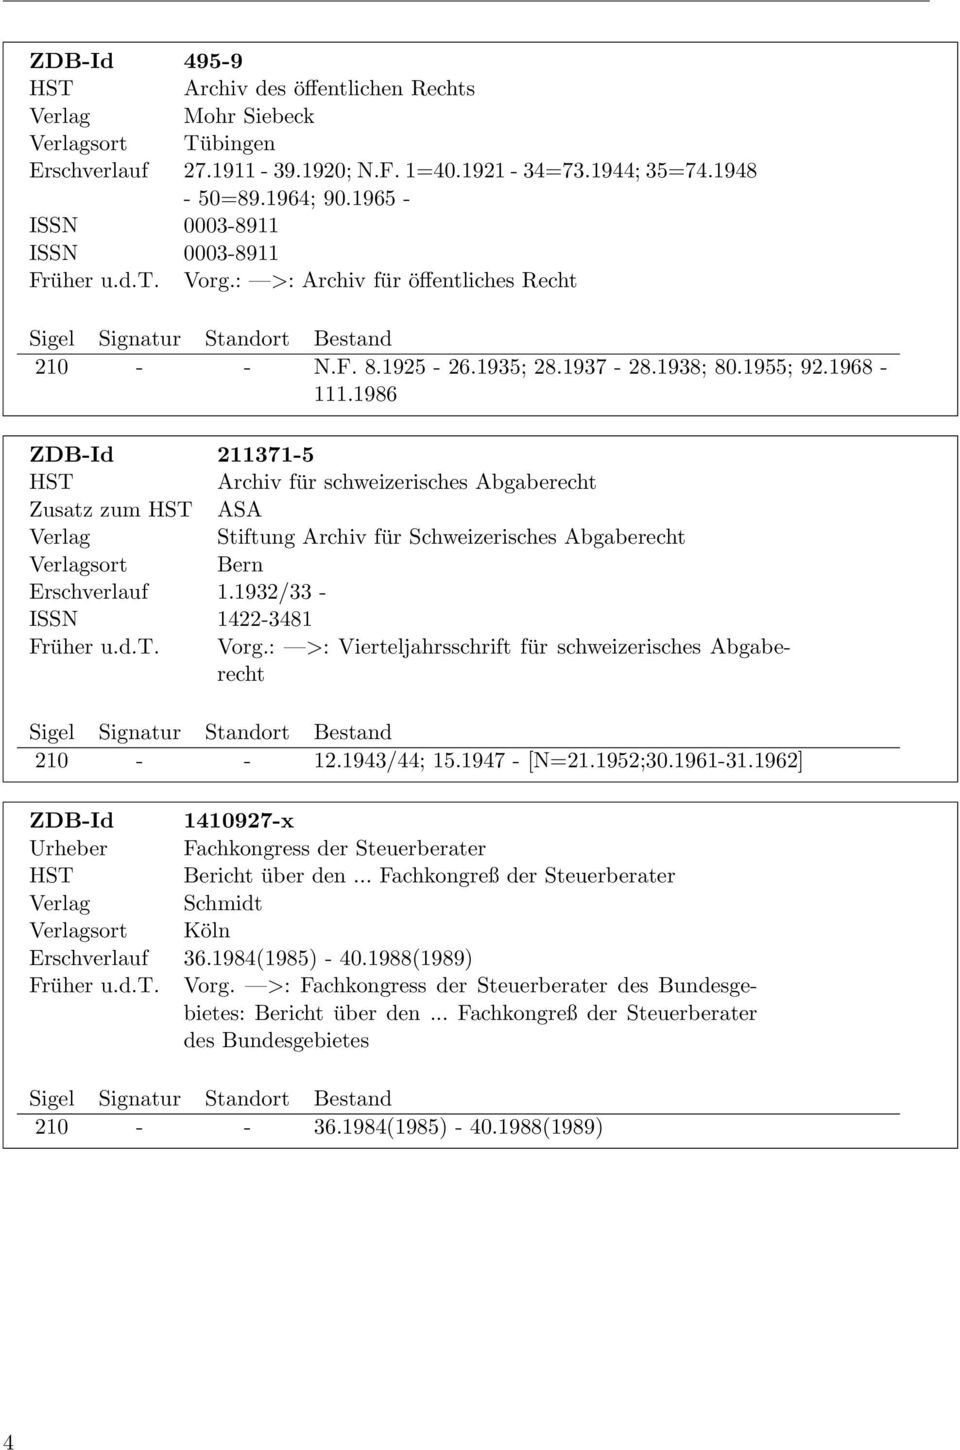 1986 ZDB-Id 211371-5 HST Archiv für schweizerisches Abgaberecht Zusatz zum HST ASA Stiftung Archiv für Schweizerisches Abgaberecht sort Bern Erschverlauf 1.1932/33 - ISSN 1422-3481 Früher u.d.t. Vorg.